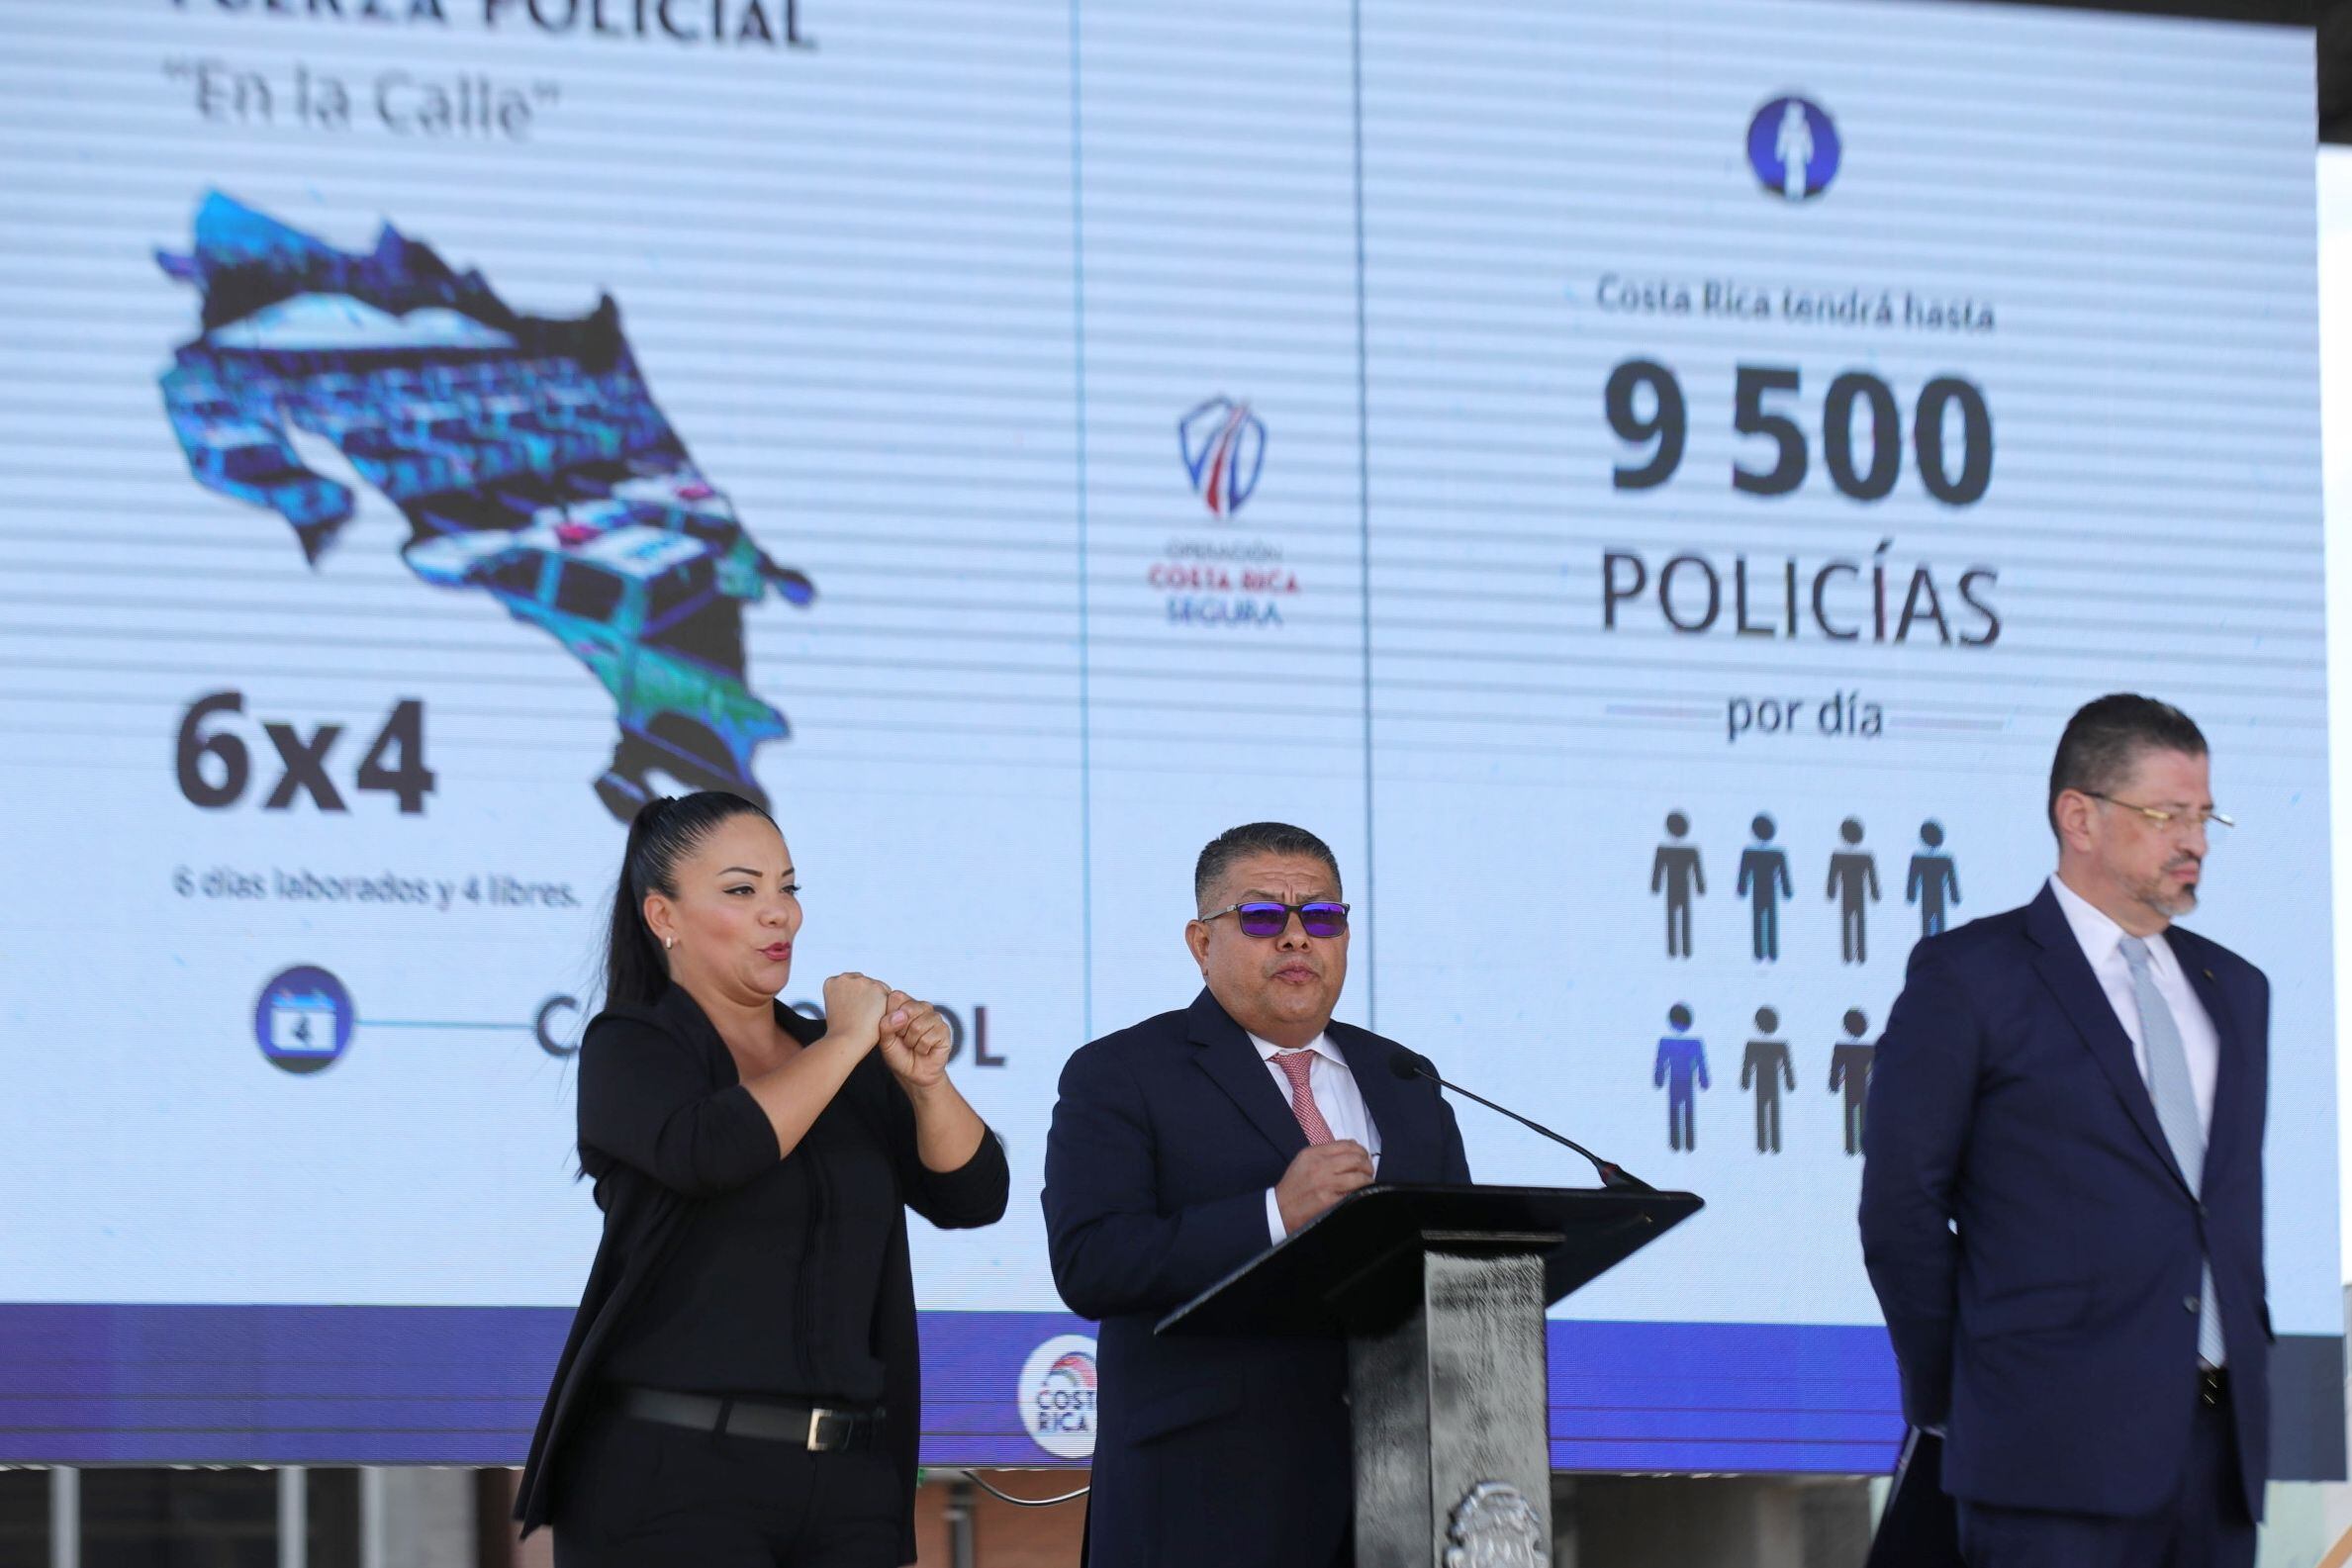 El presidente de la República Rodrigo Chaves presentó junto a los ministros de Seguridad y Justicia el proyecto Operación Seguridad Nacional en la plaza de la Democracia. Foto: